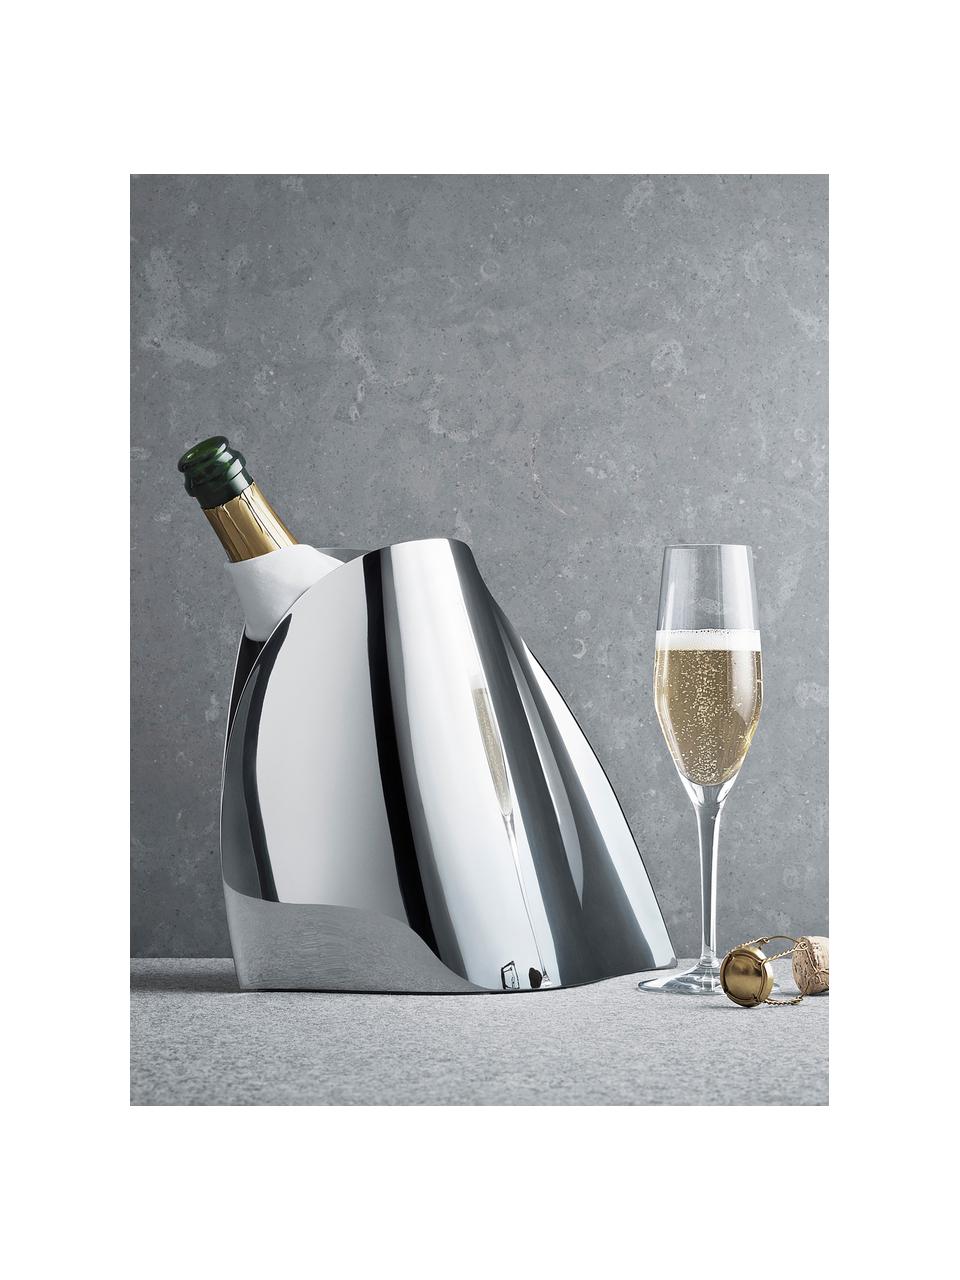 Glacette per champagne in acciaio inox in forma organica Indulgence, Acciaio inossidabile lucido, Argentato molto lucido, Larg. 28 x Alt. 23 cm